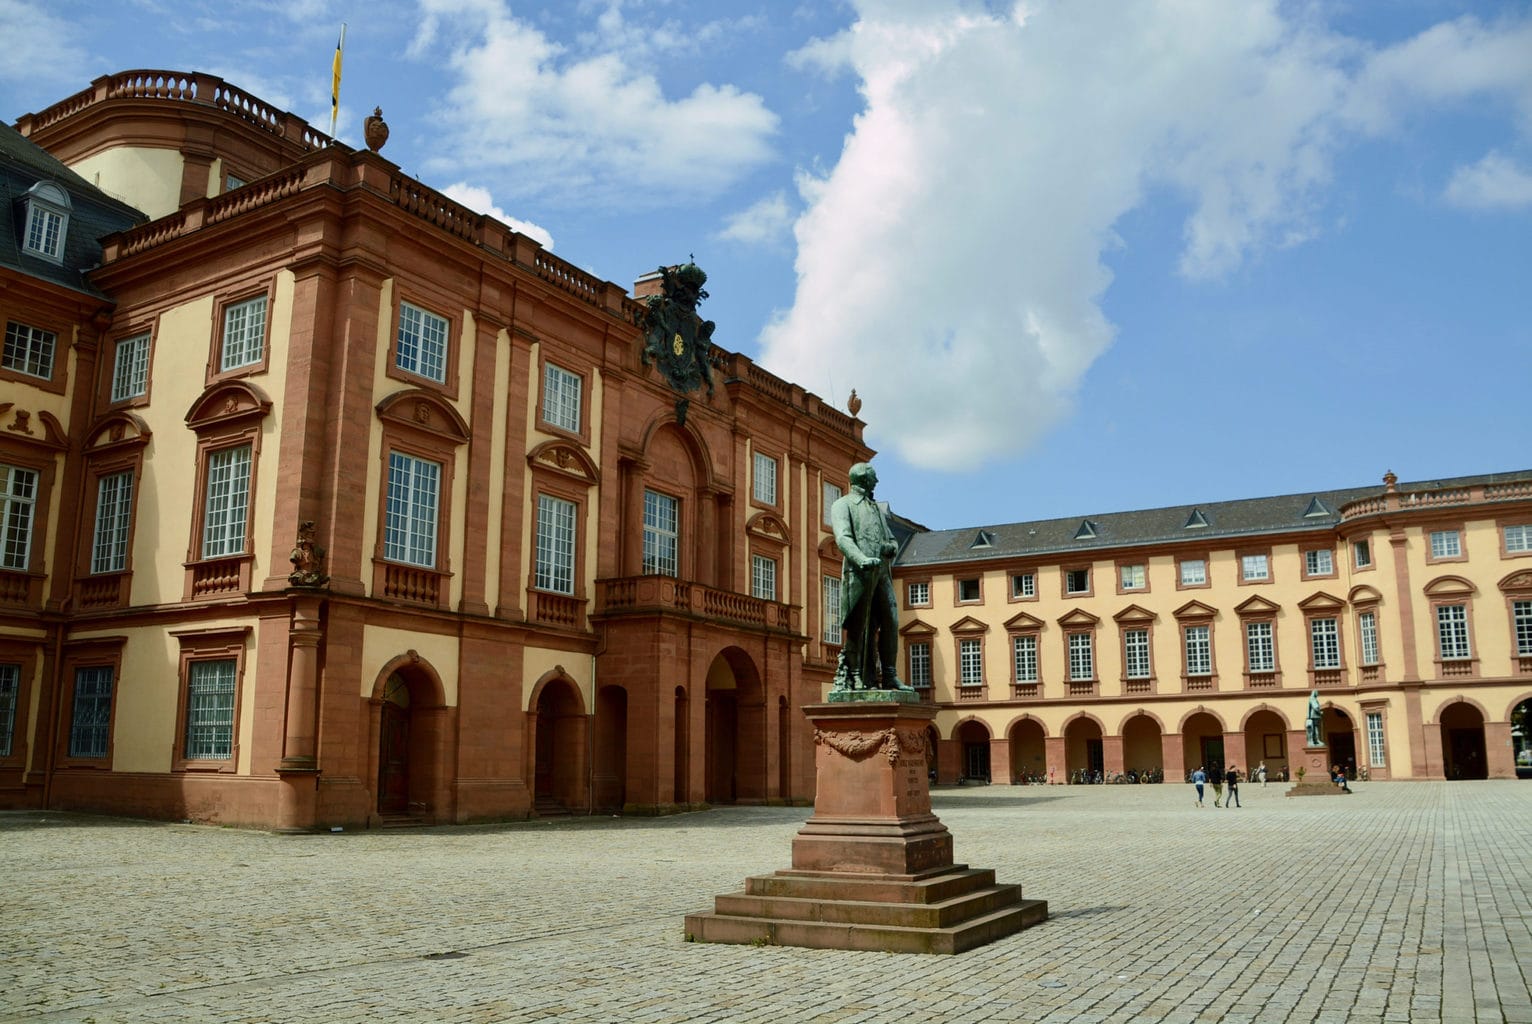 Het stadskasteel van Mannheim met binnenhof en standbeeld uit het barokke tijdperk